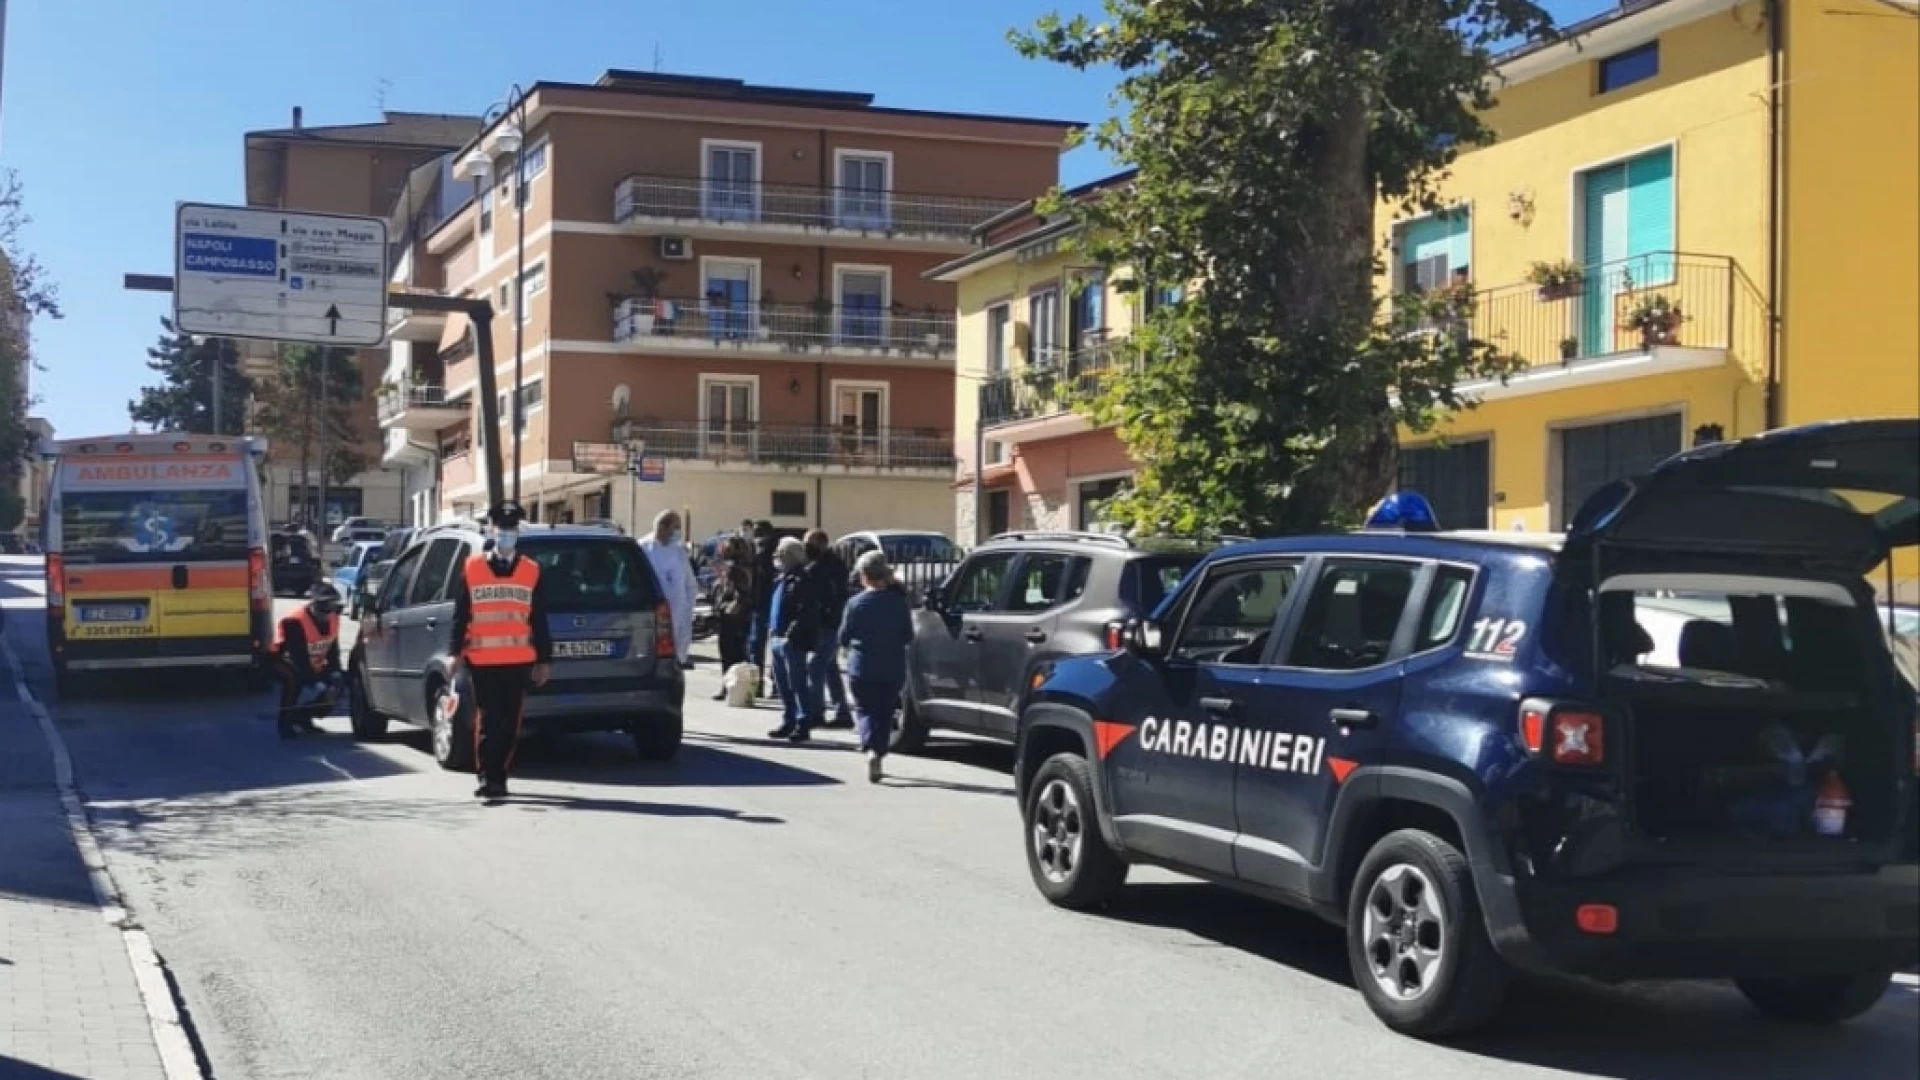 Isernia: I Carabinieri intervengono a seguito di incidente stradale.